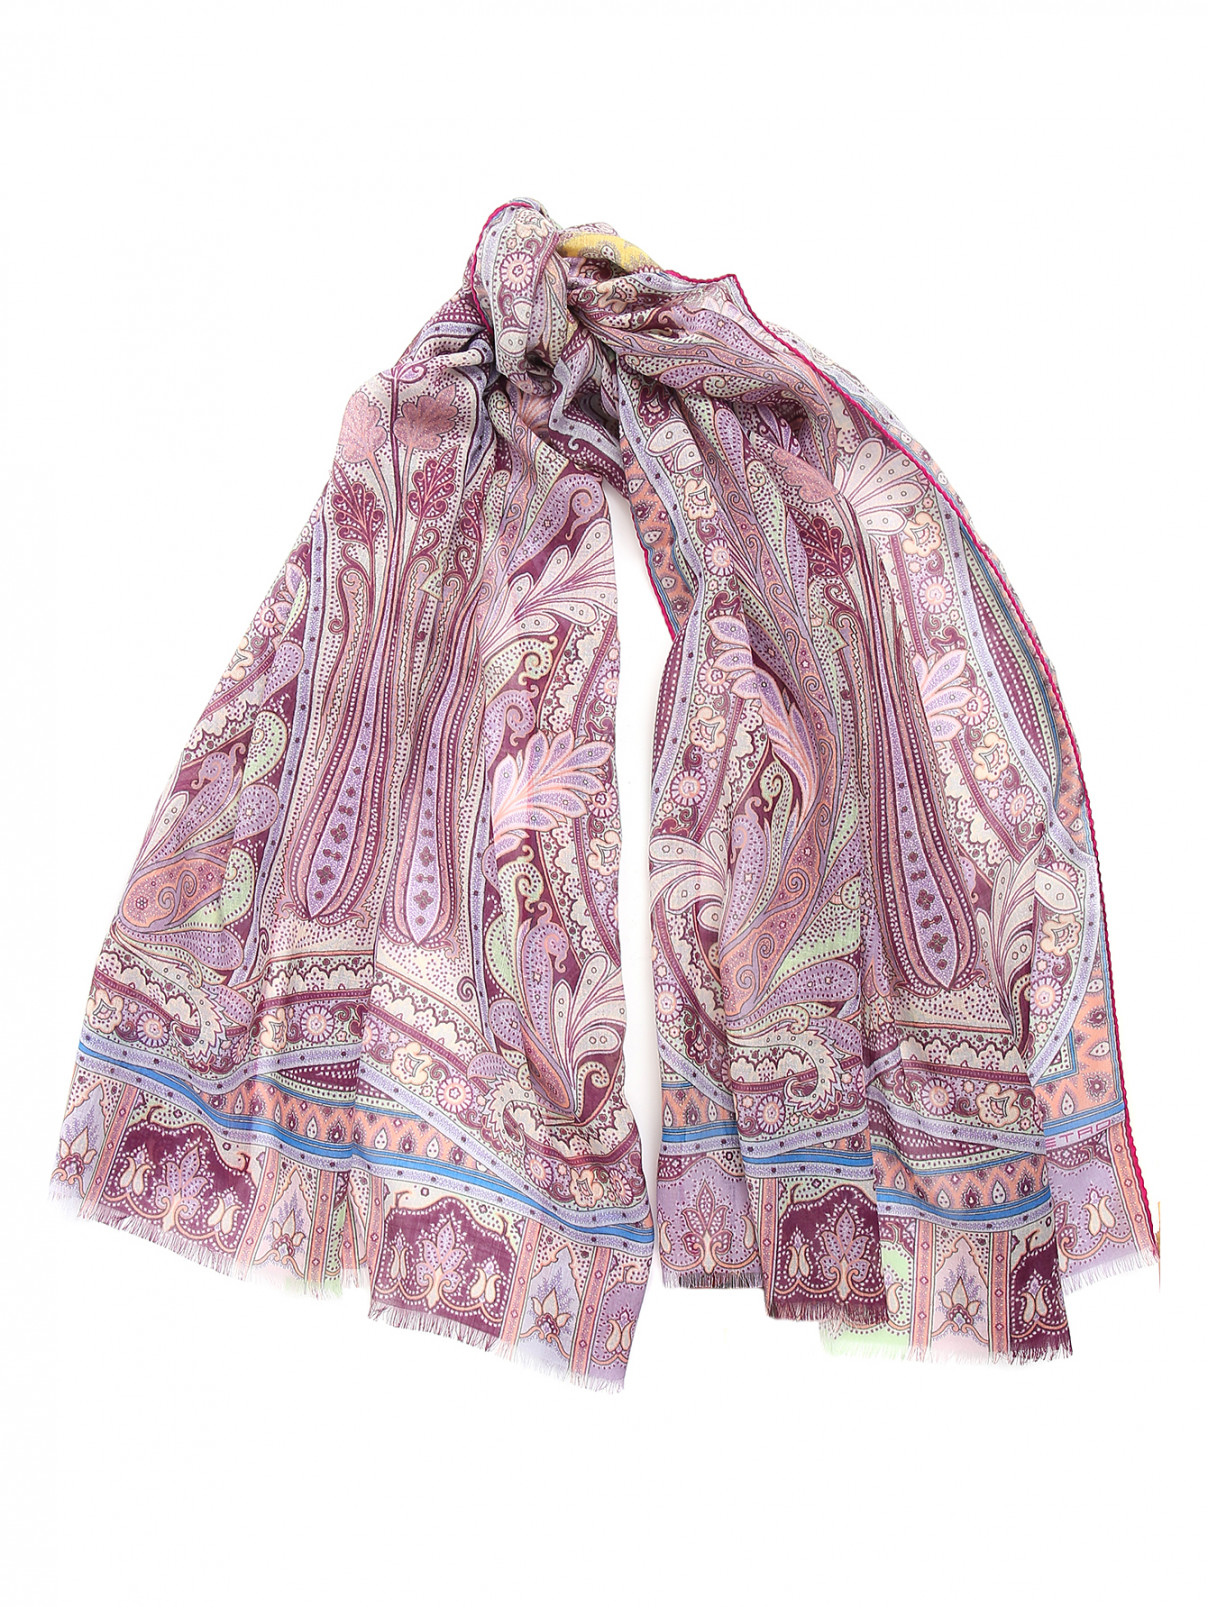 Шарф из шерсти и шелка с принтом пейсли Etro  –  Общий вид  – Цвет:  Фиолетовый